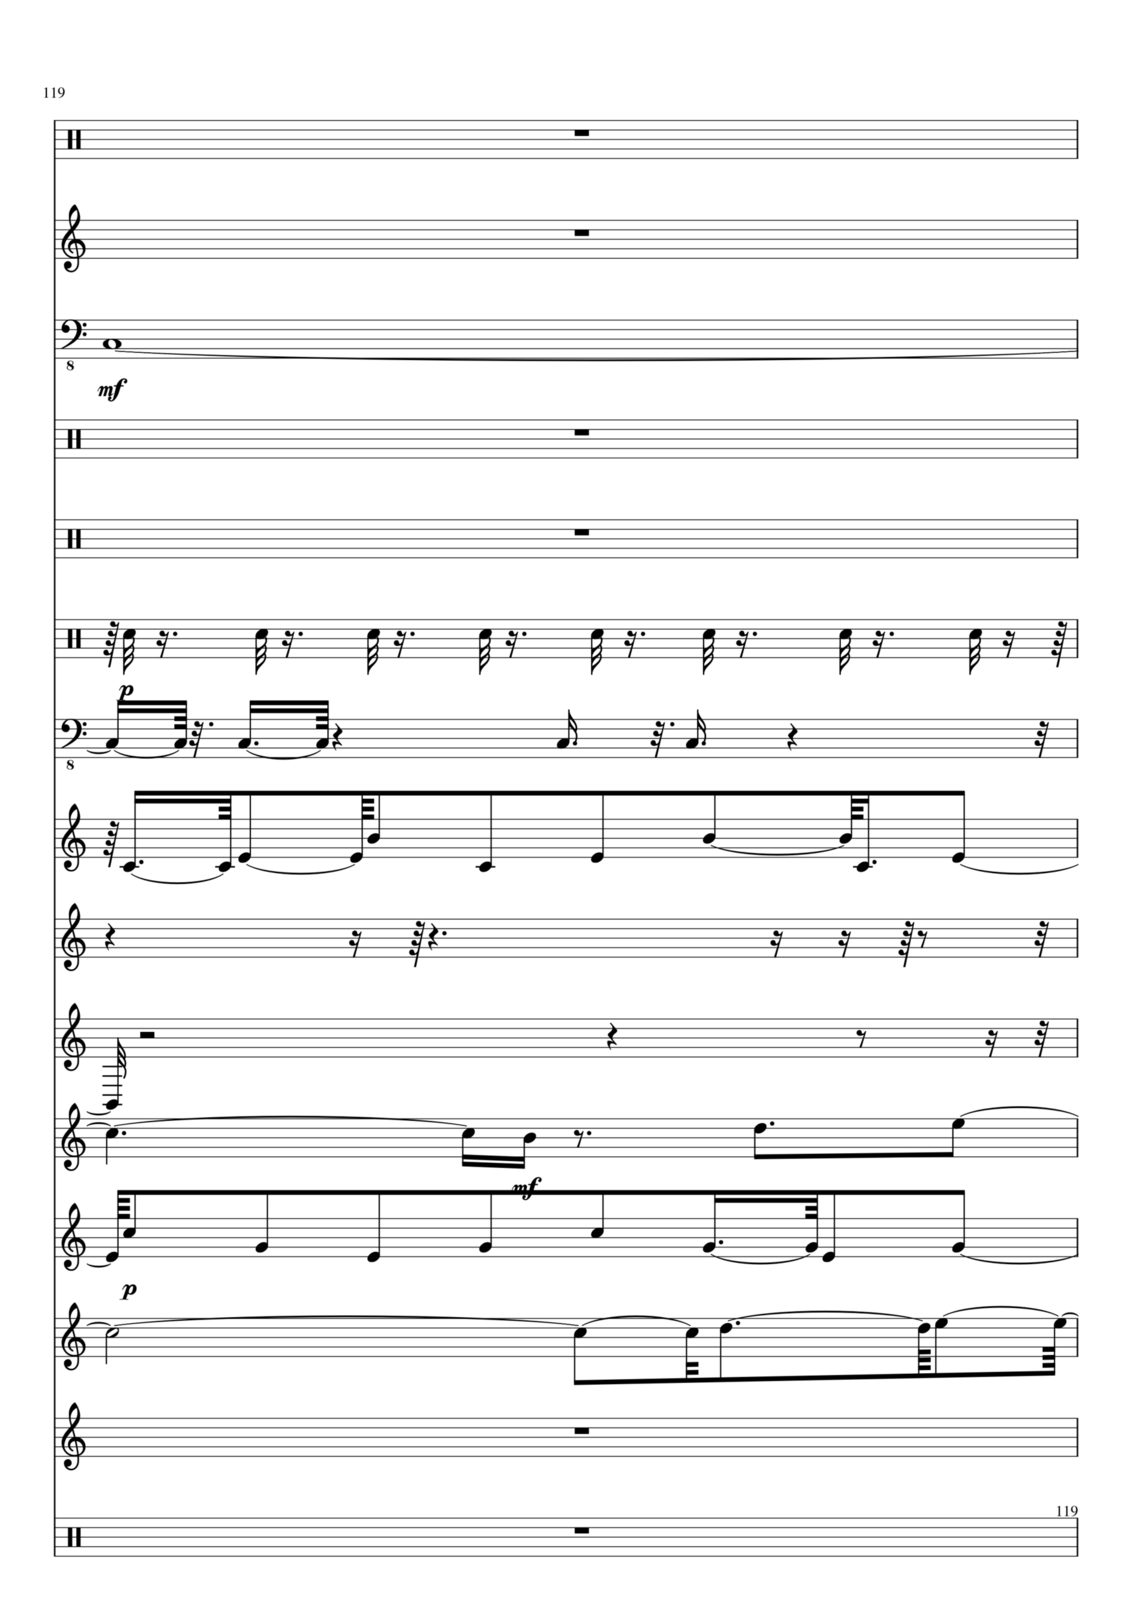 Utro polinyi slide, Image 119